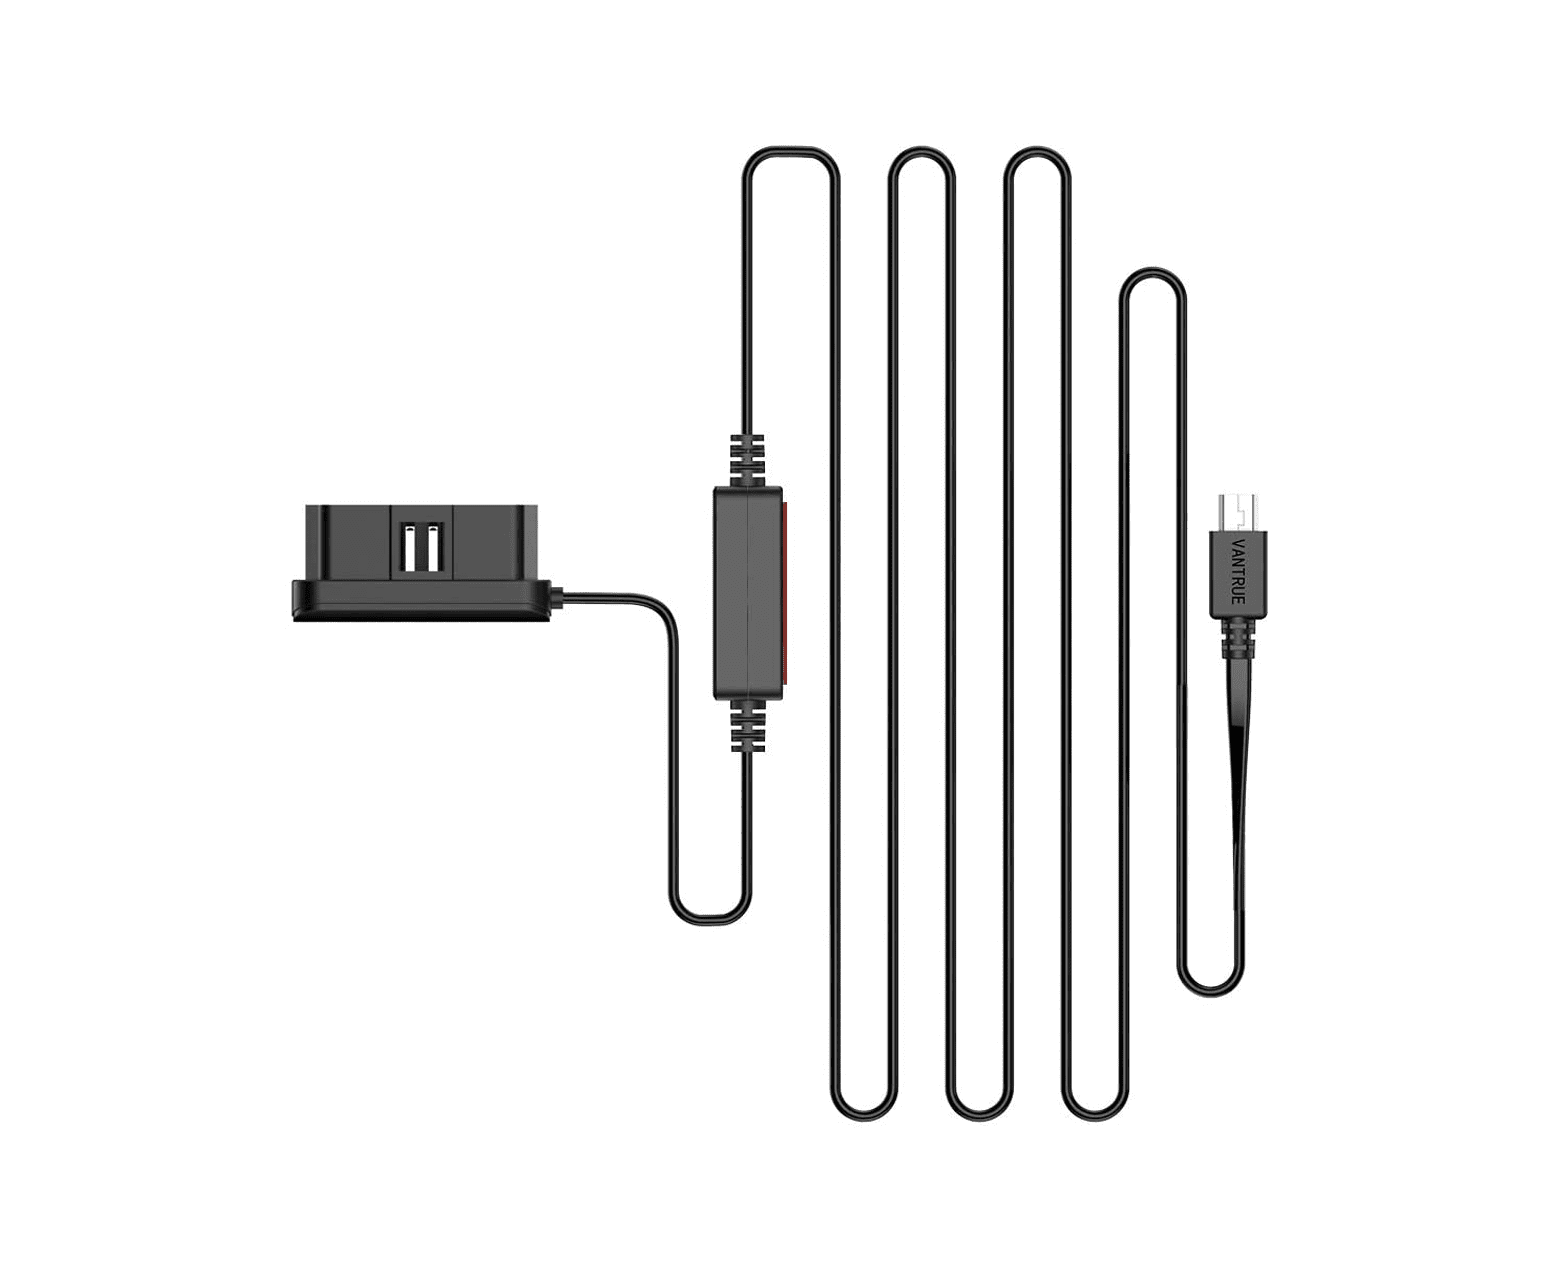 Vantrue OBD cable (power cable)